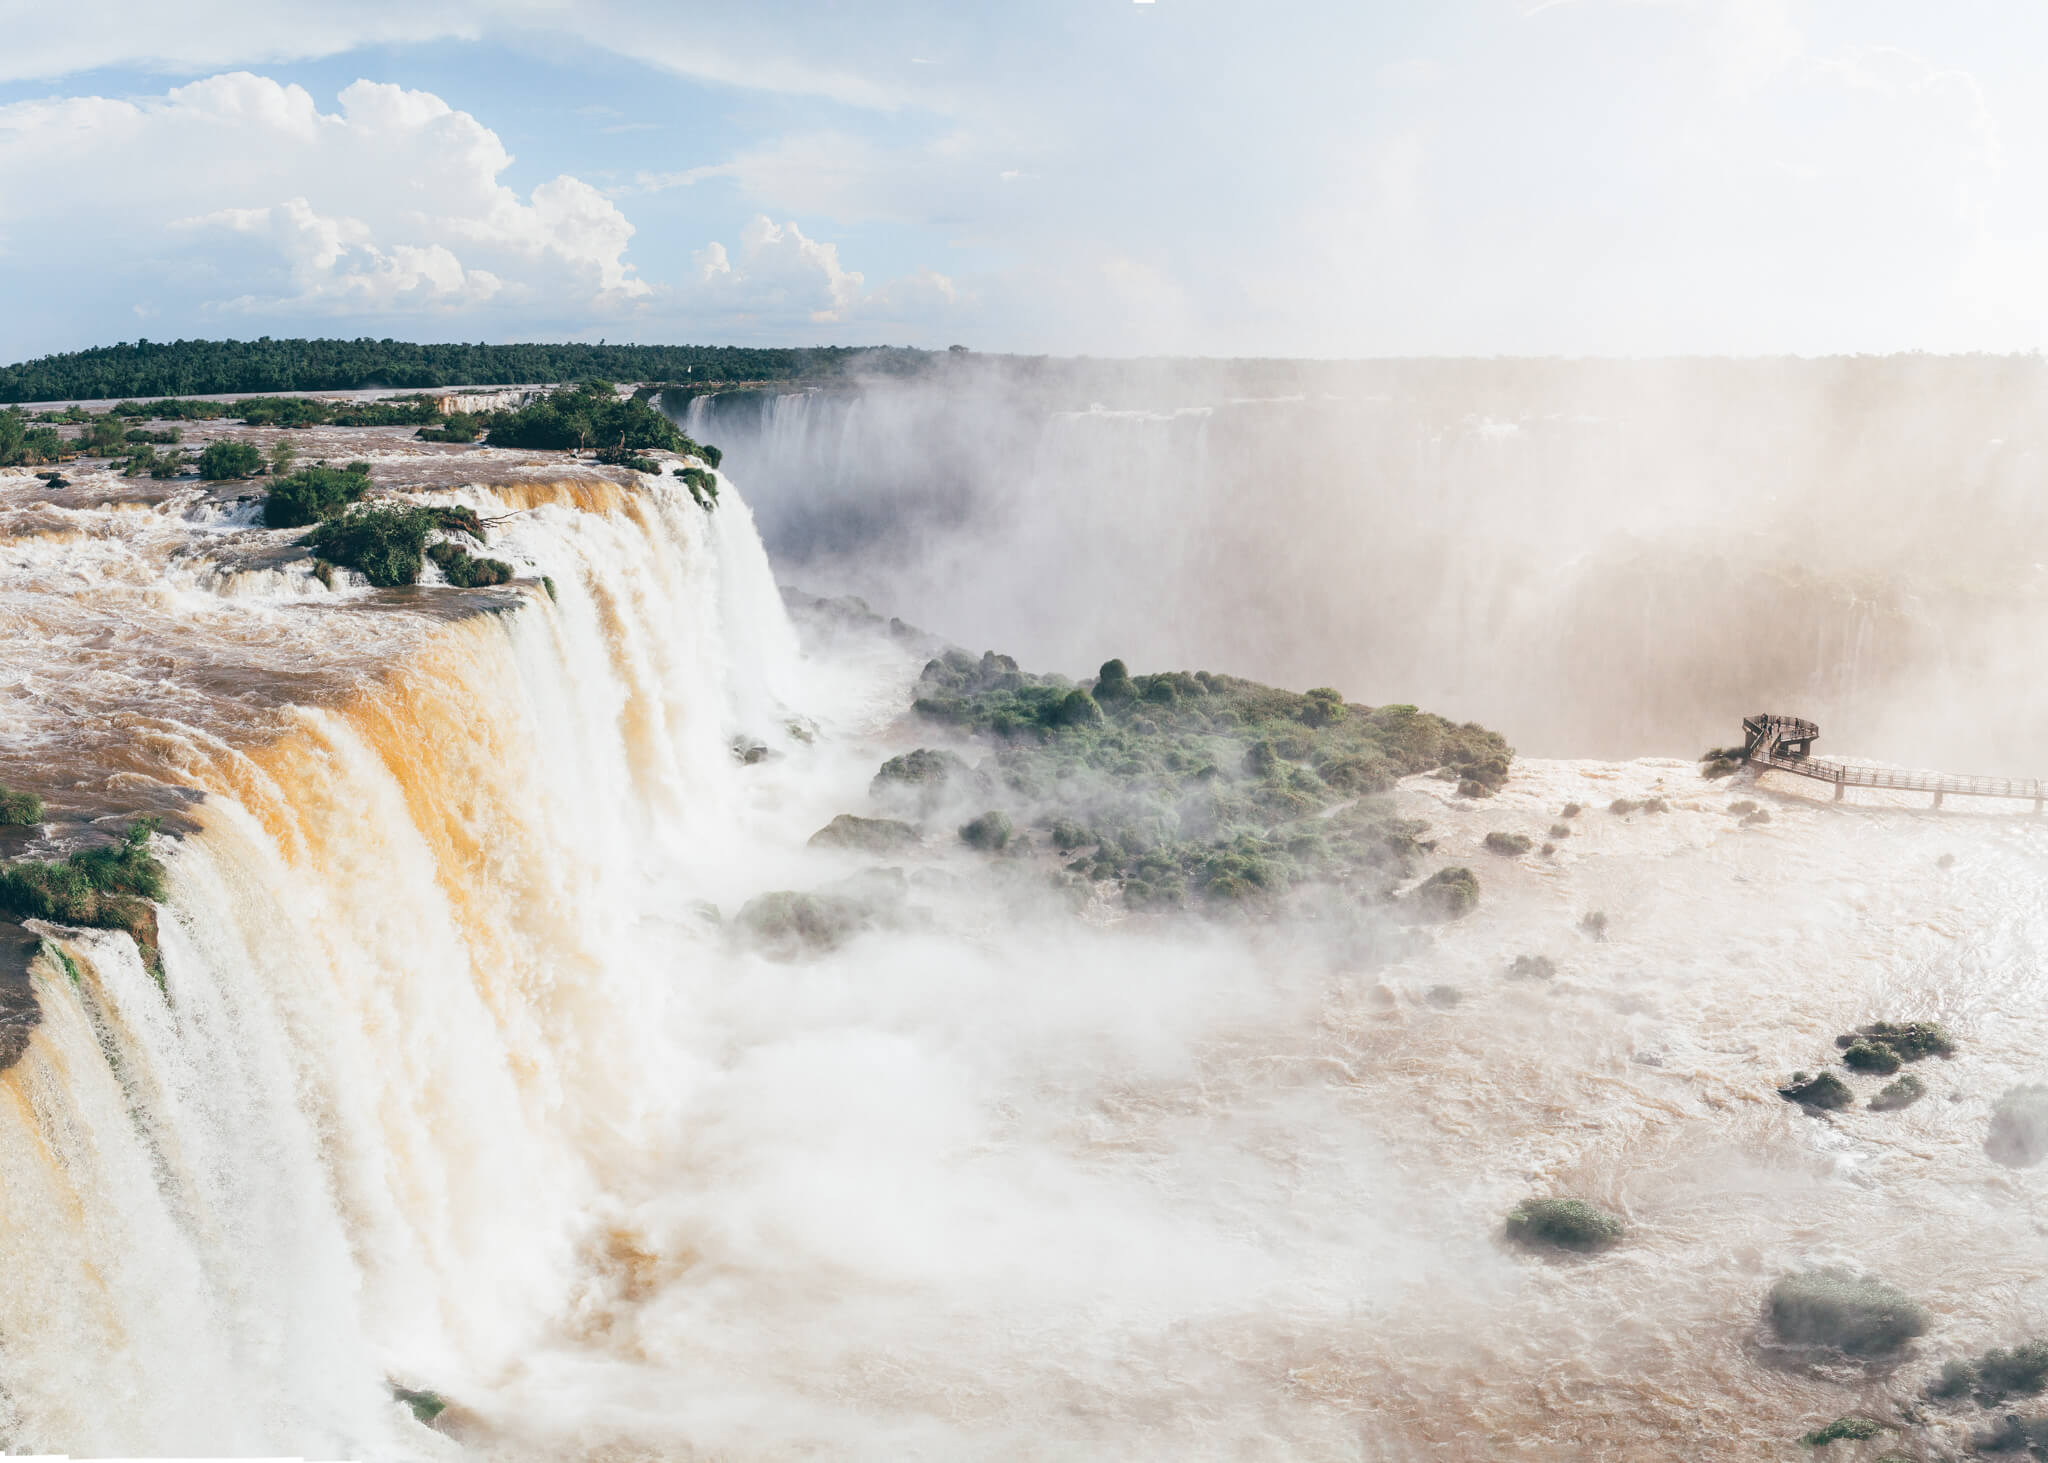 Observe do lado direito da imagem, bem pequeninho, o mirante e a plataforma das Cataratas do Iguaçu